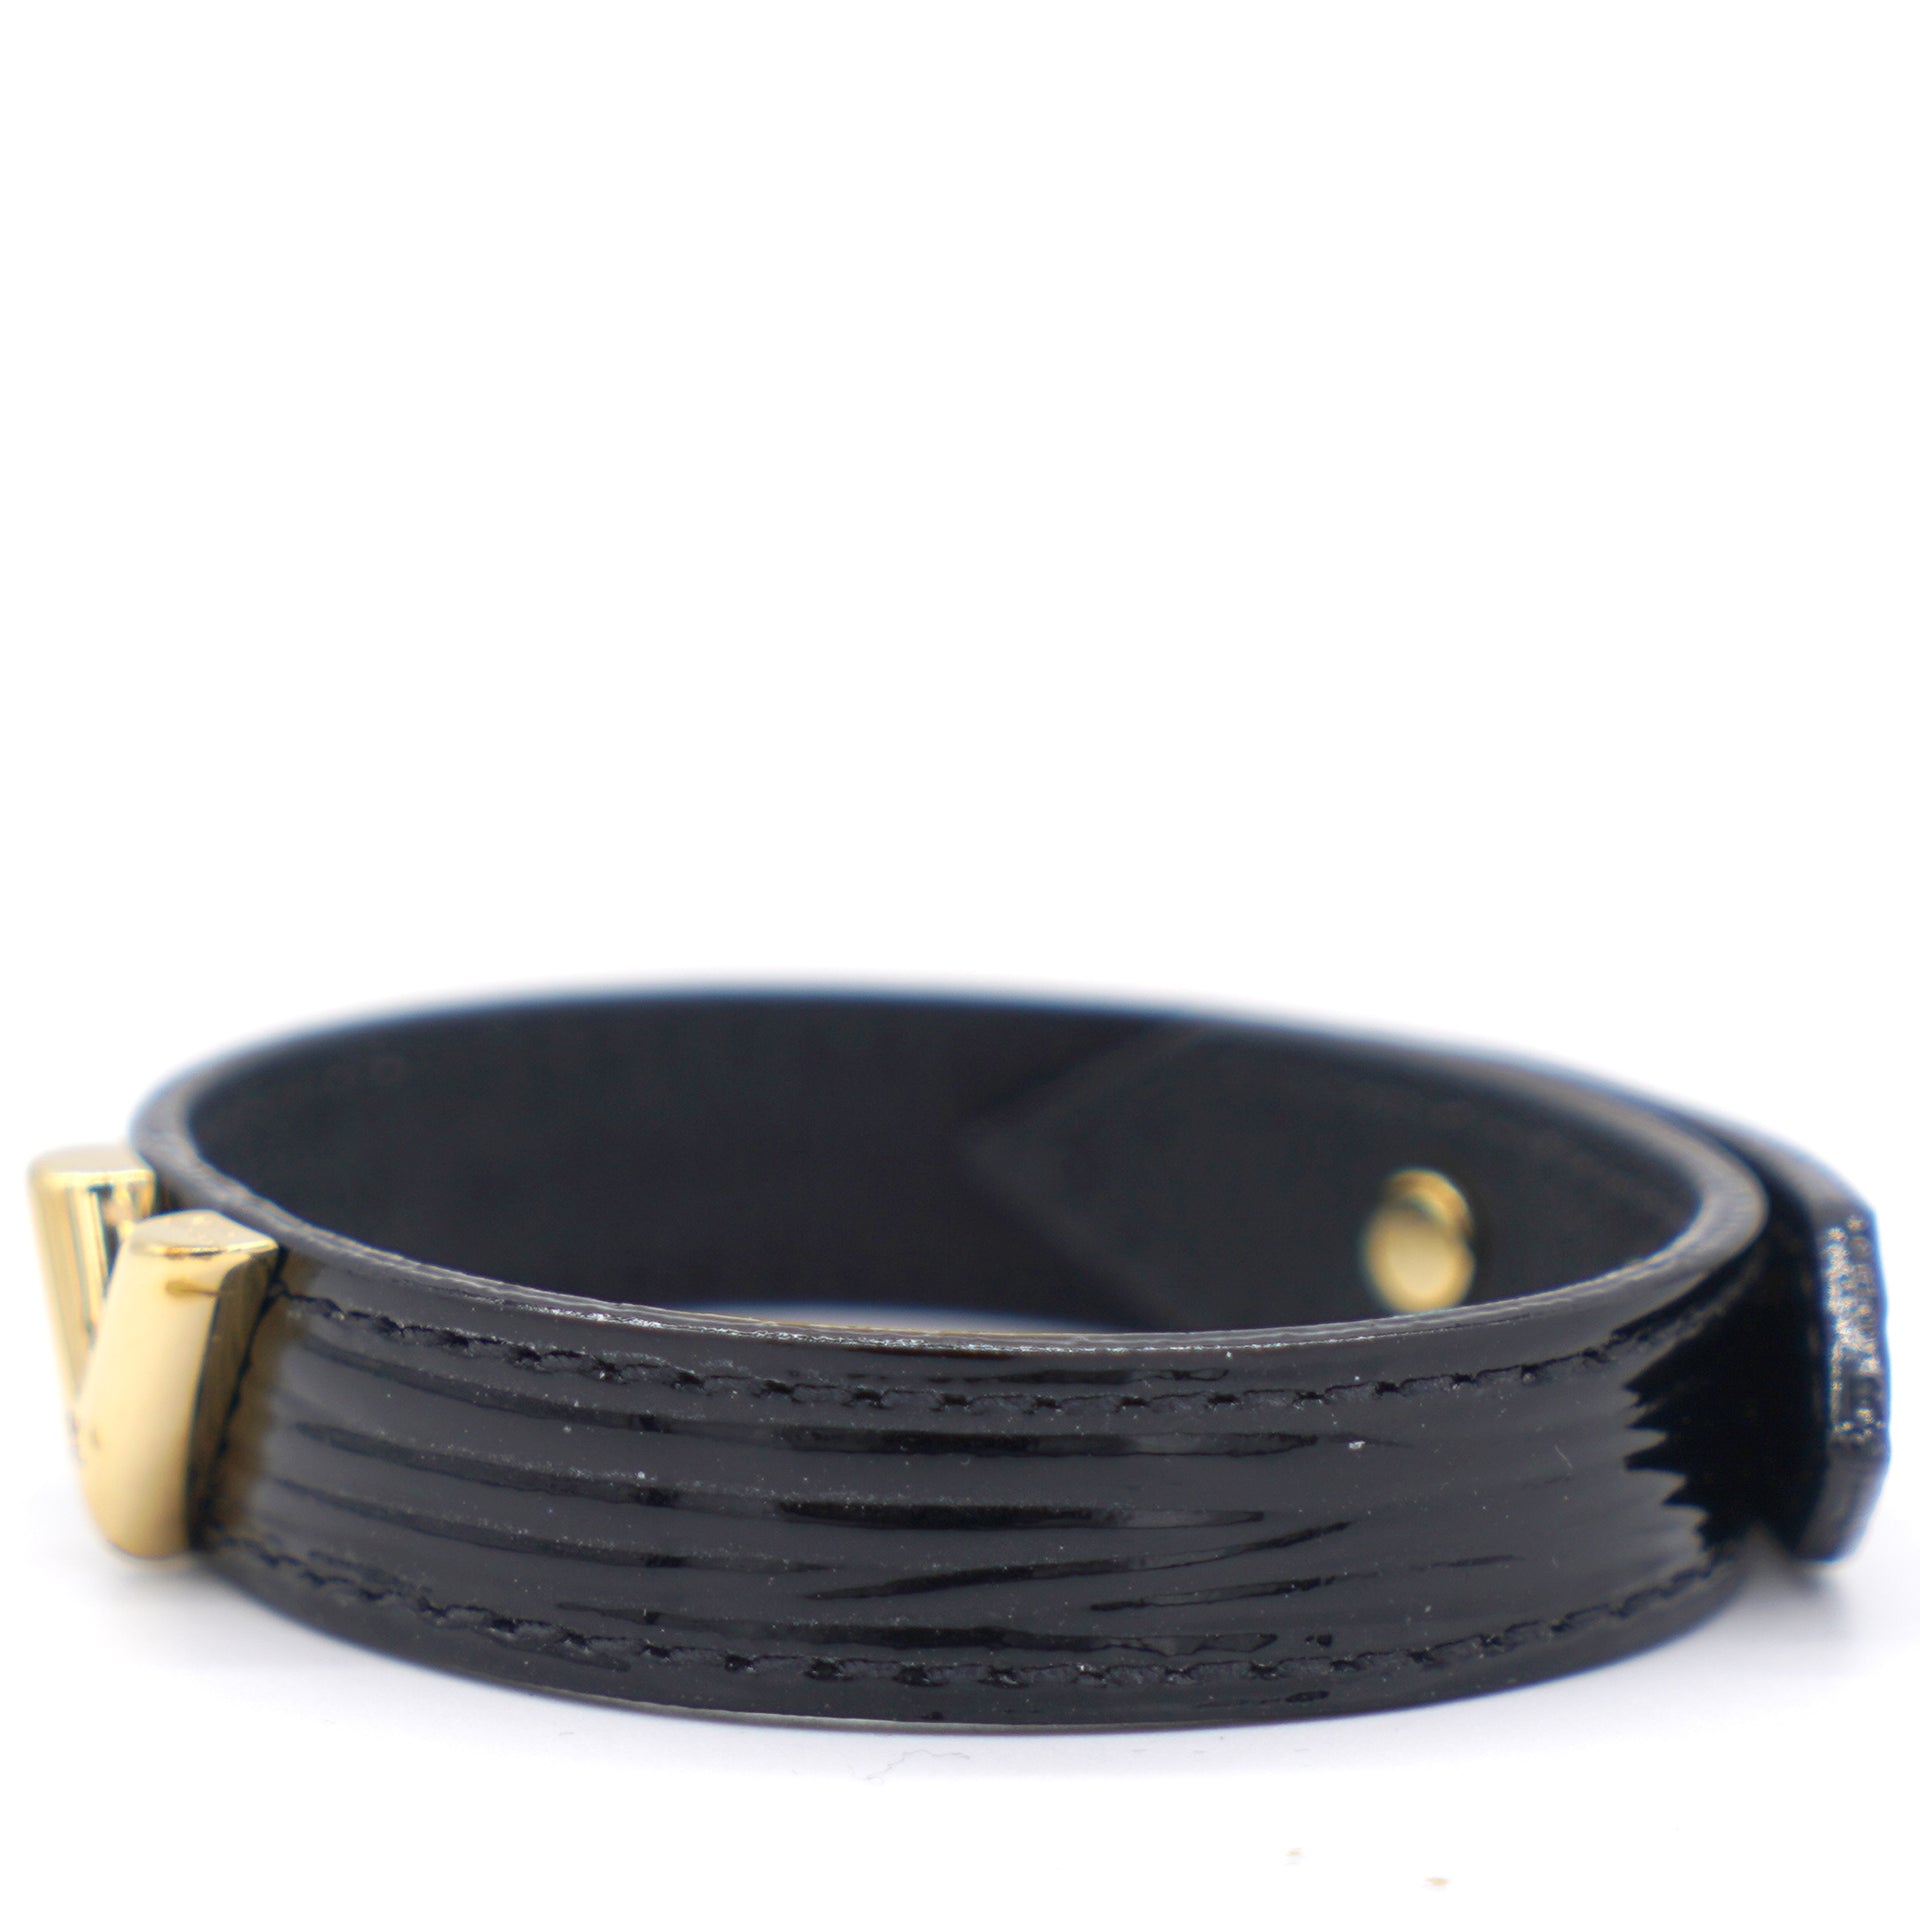 Louis+Vuitton+Monogram+Bracelet+Essential+V+Accessories+Bangle+